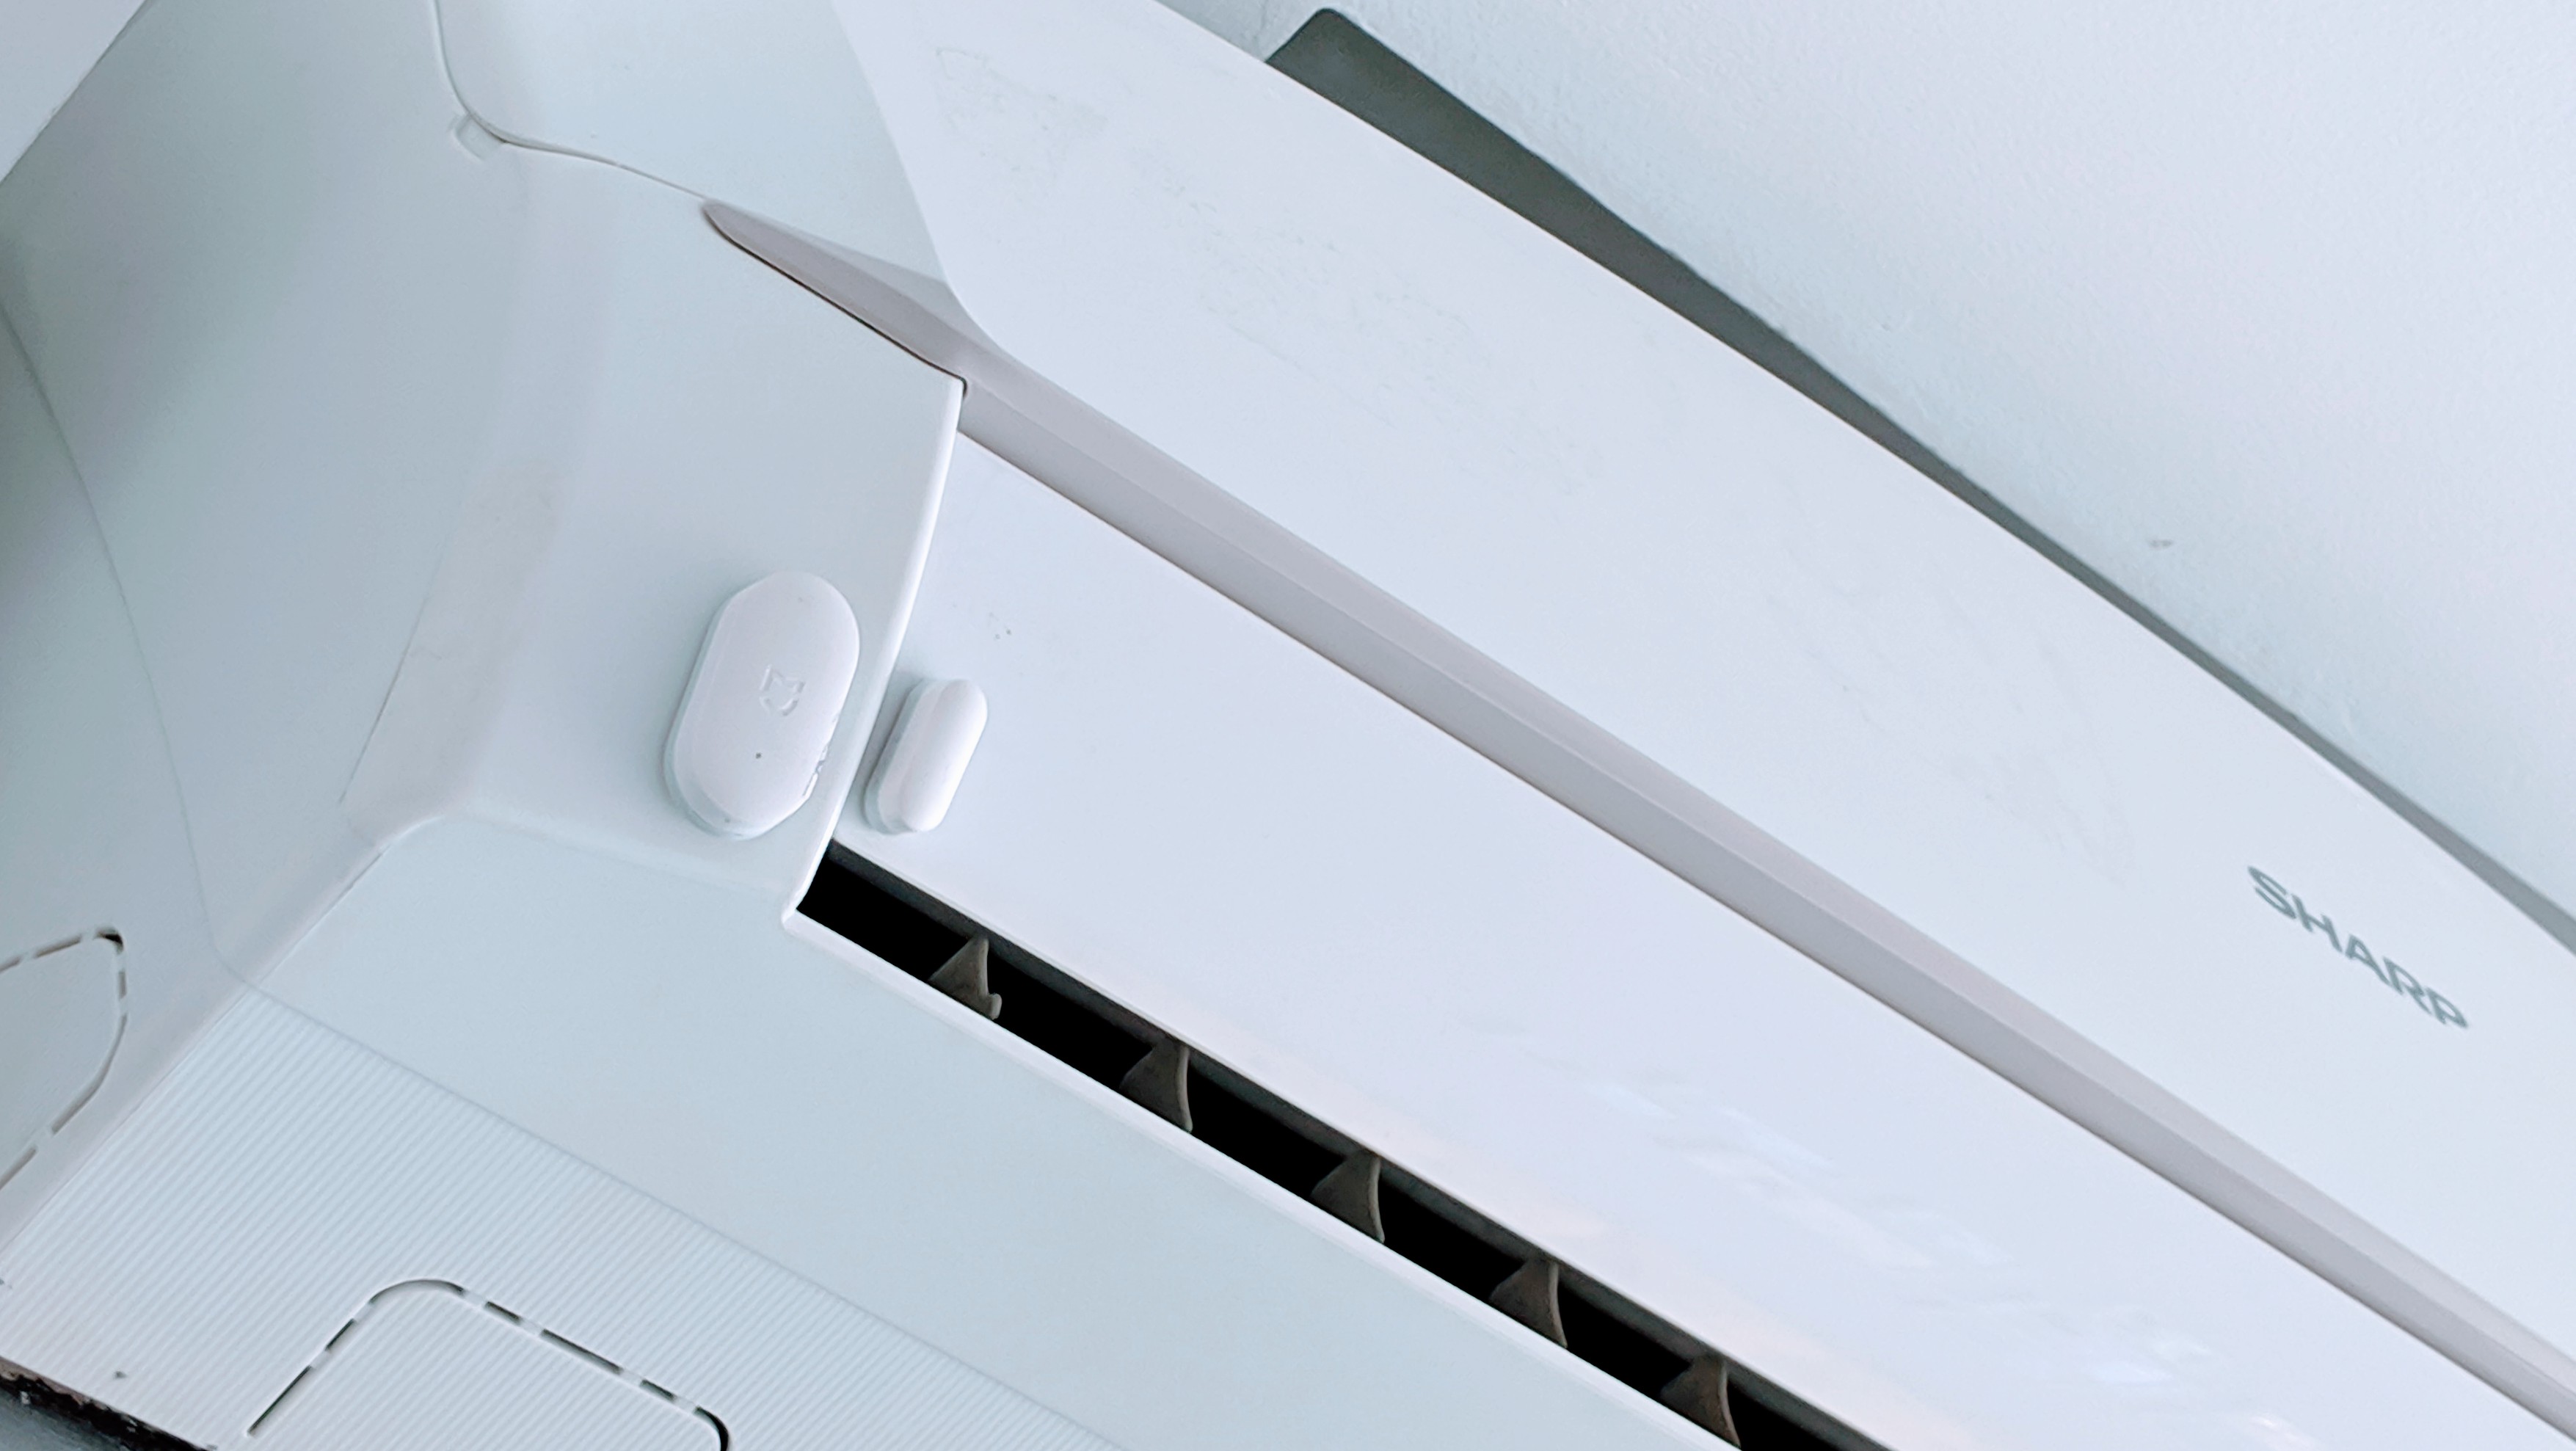 Ý tưởng quản lý máy lạnh trong nhà thông minh với Home Assistant - IMG 20191109 112239 - y-tuong -